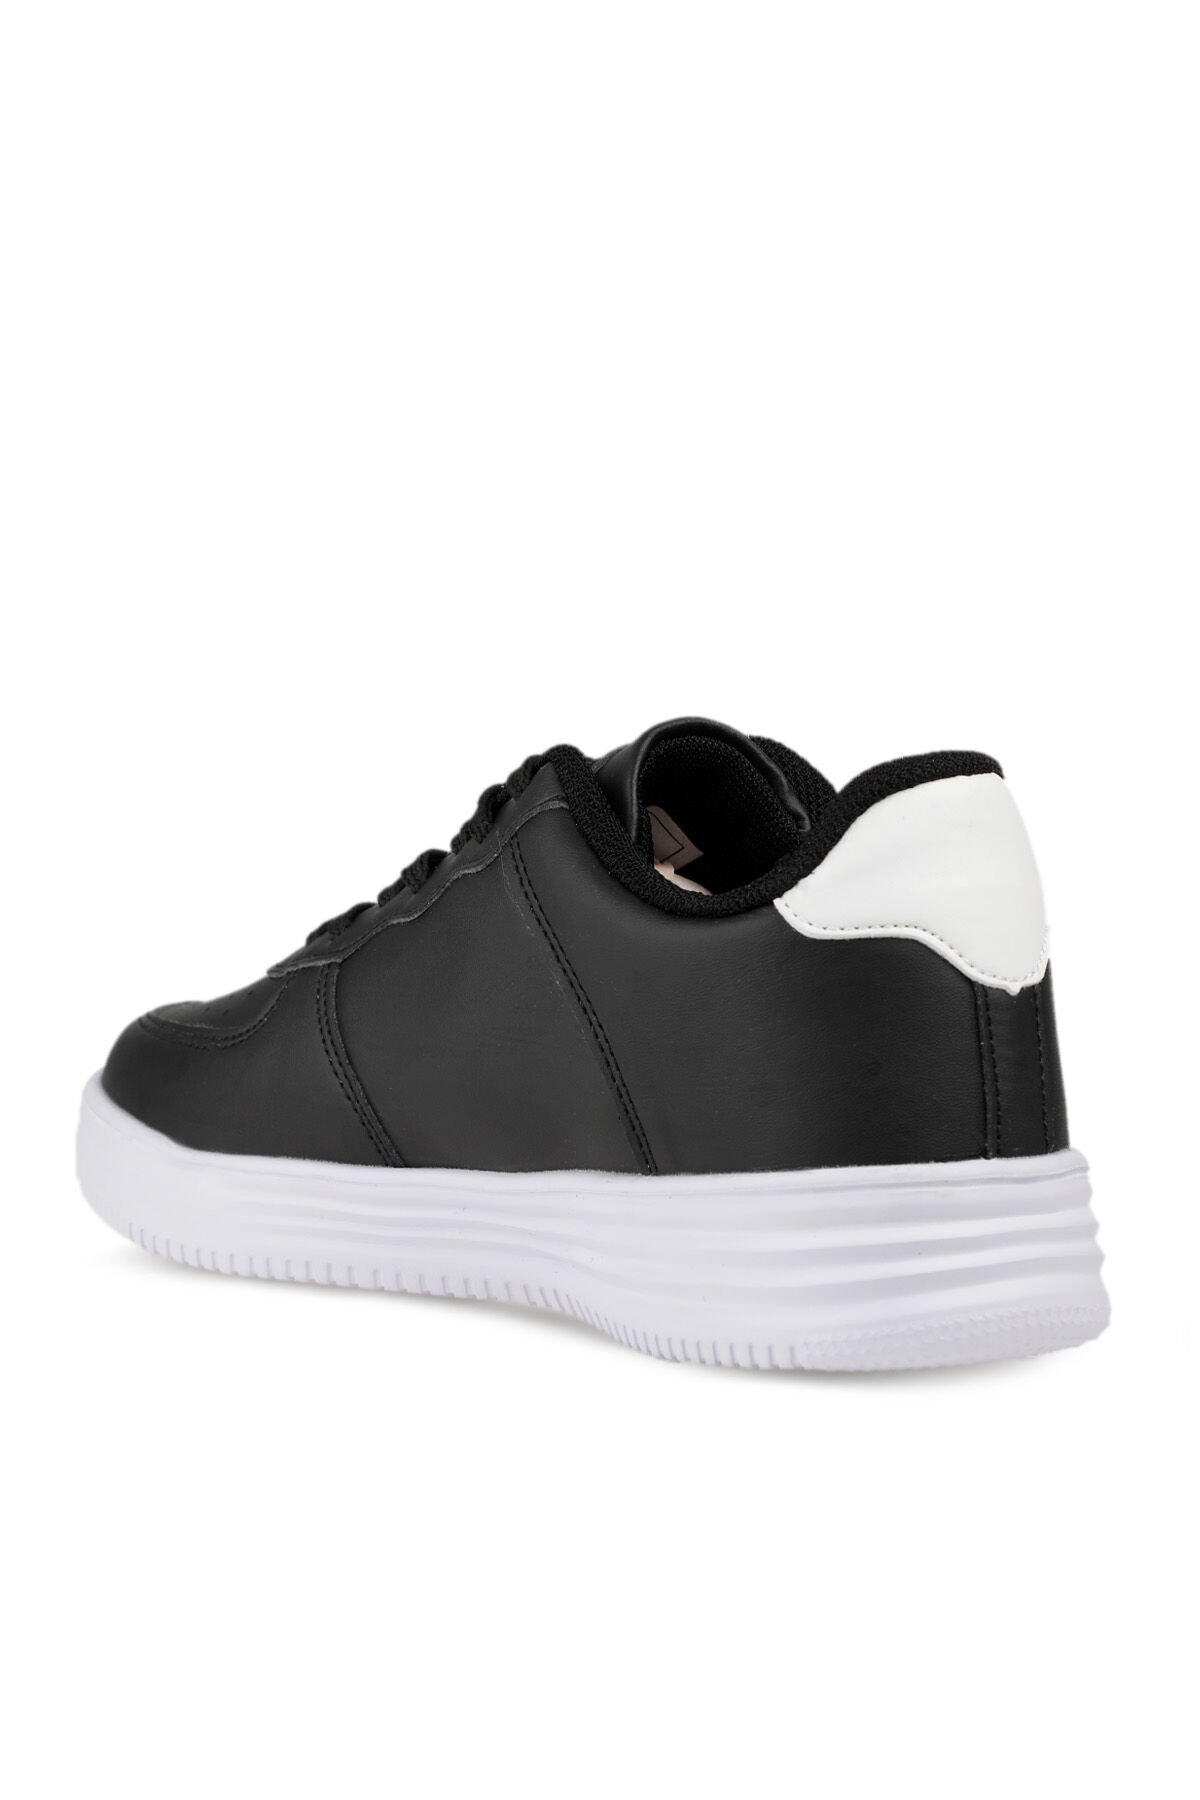 Slazenger CARBON Sneaker Kadın Ayakkabı Siyah / Beyaz - Thumbnail